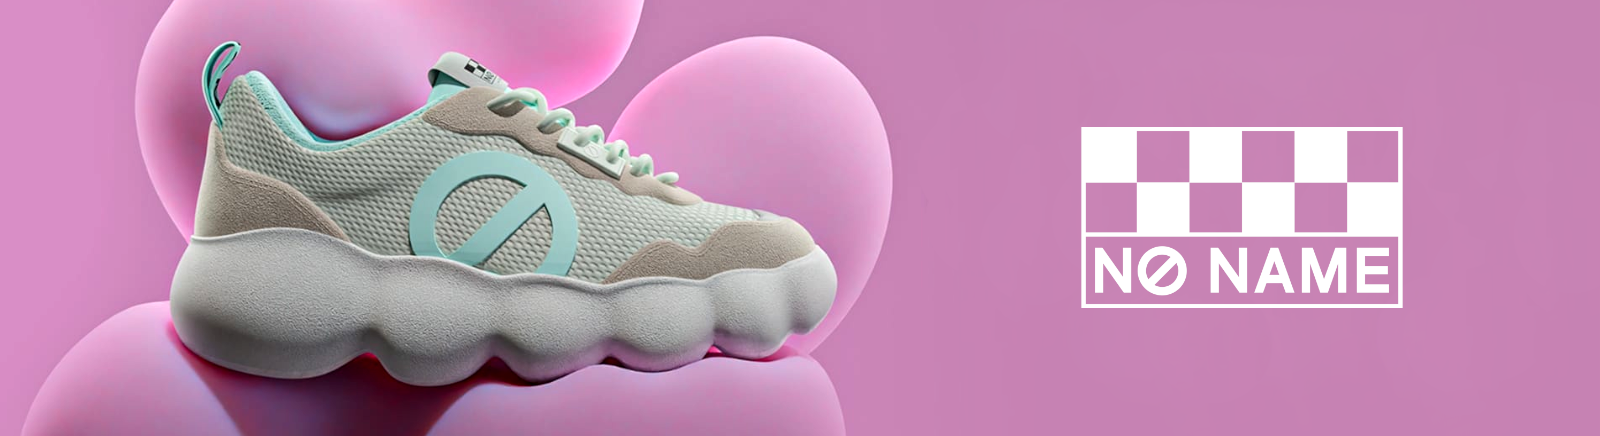 Juppen: No Name Coole und moderne Sneaker für Damen online shoppen